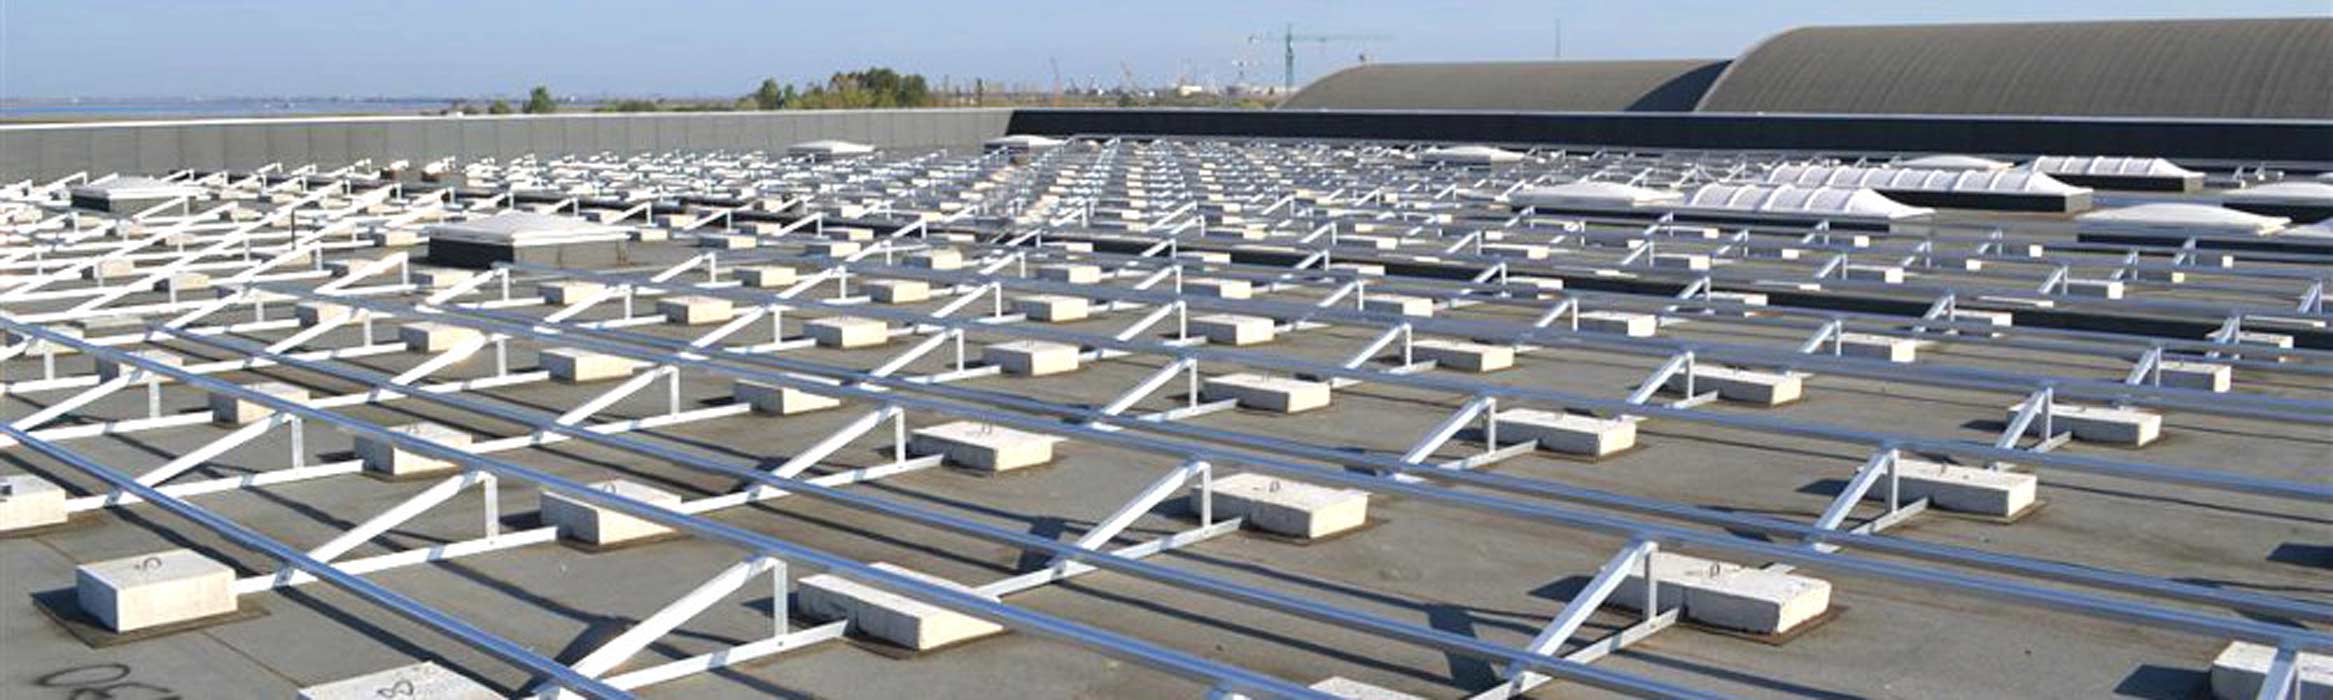 Profili in alluminio per impianto fotovoltaico